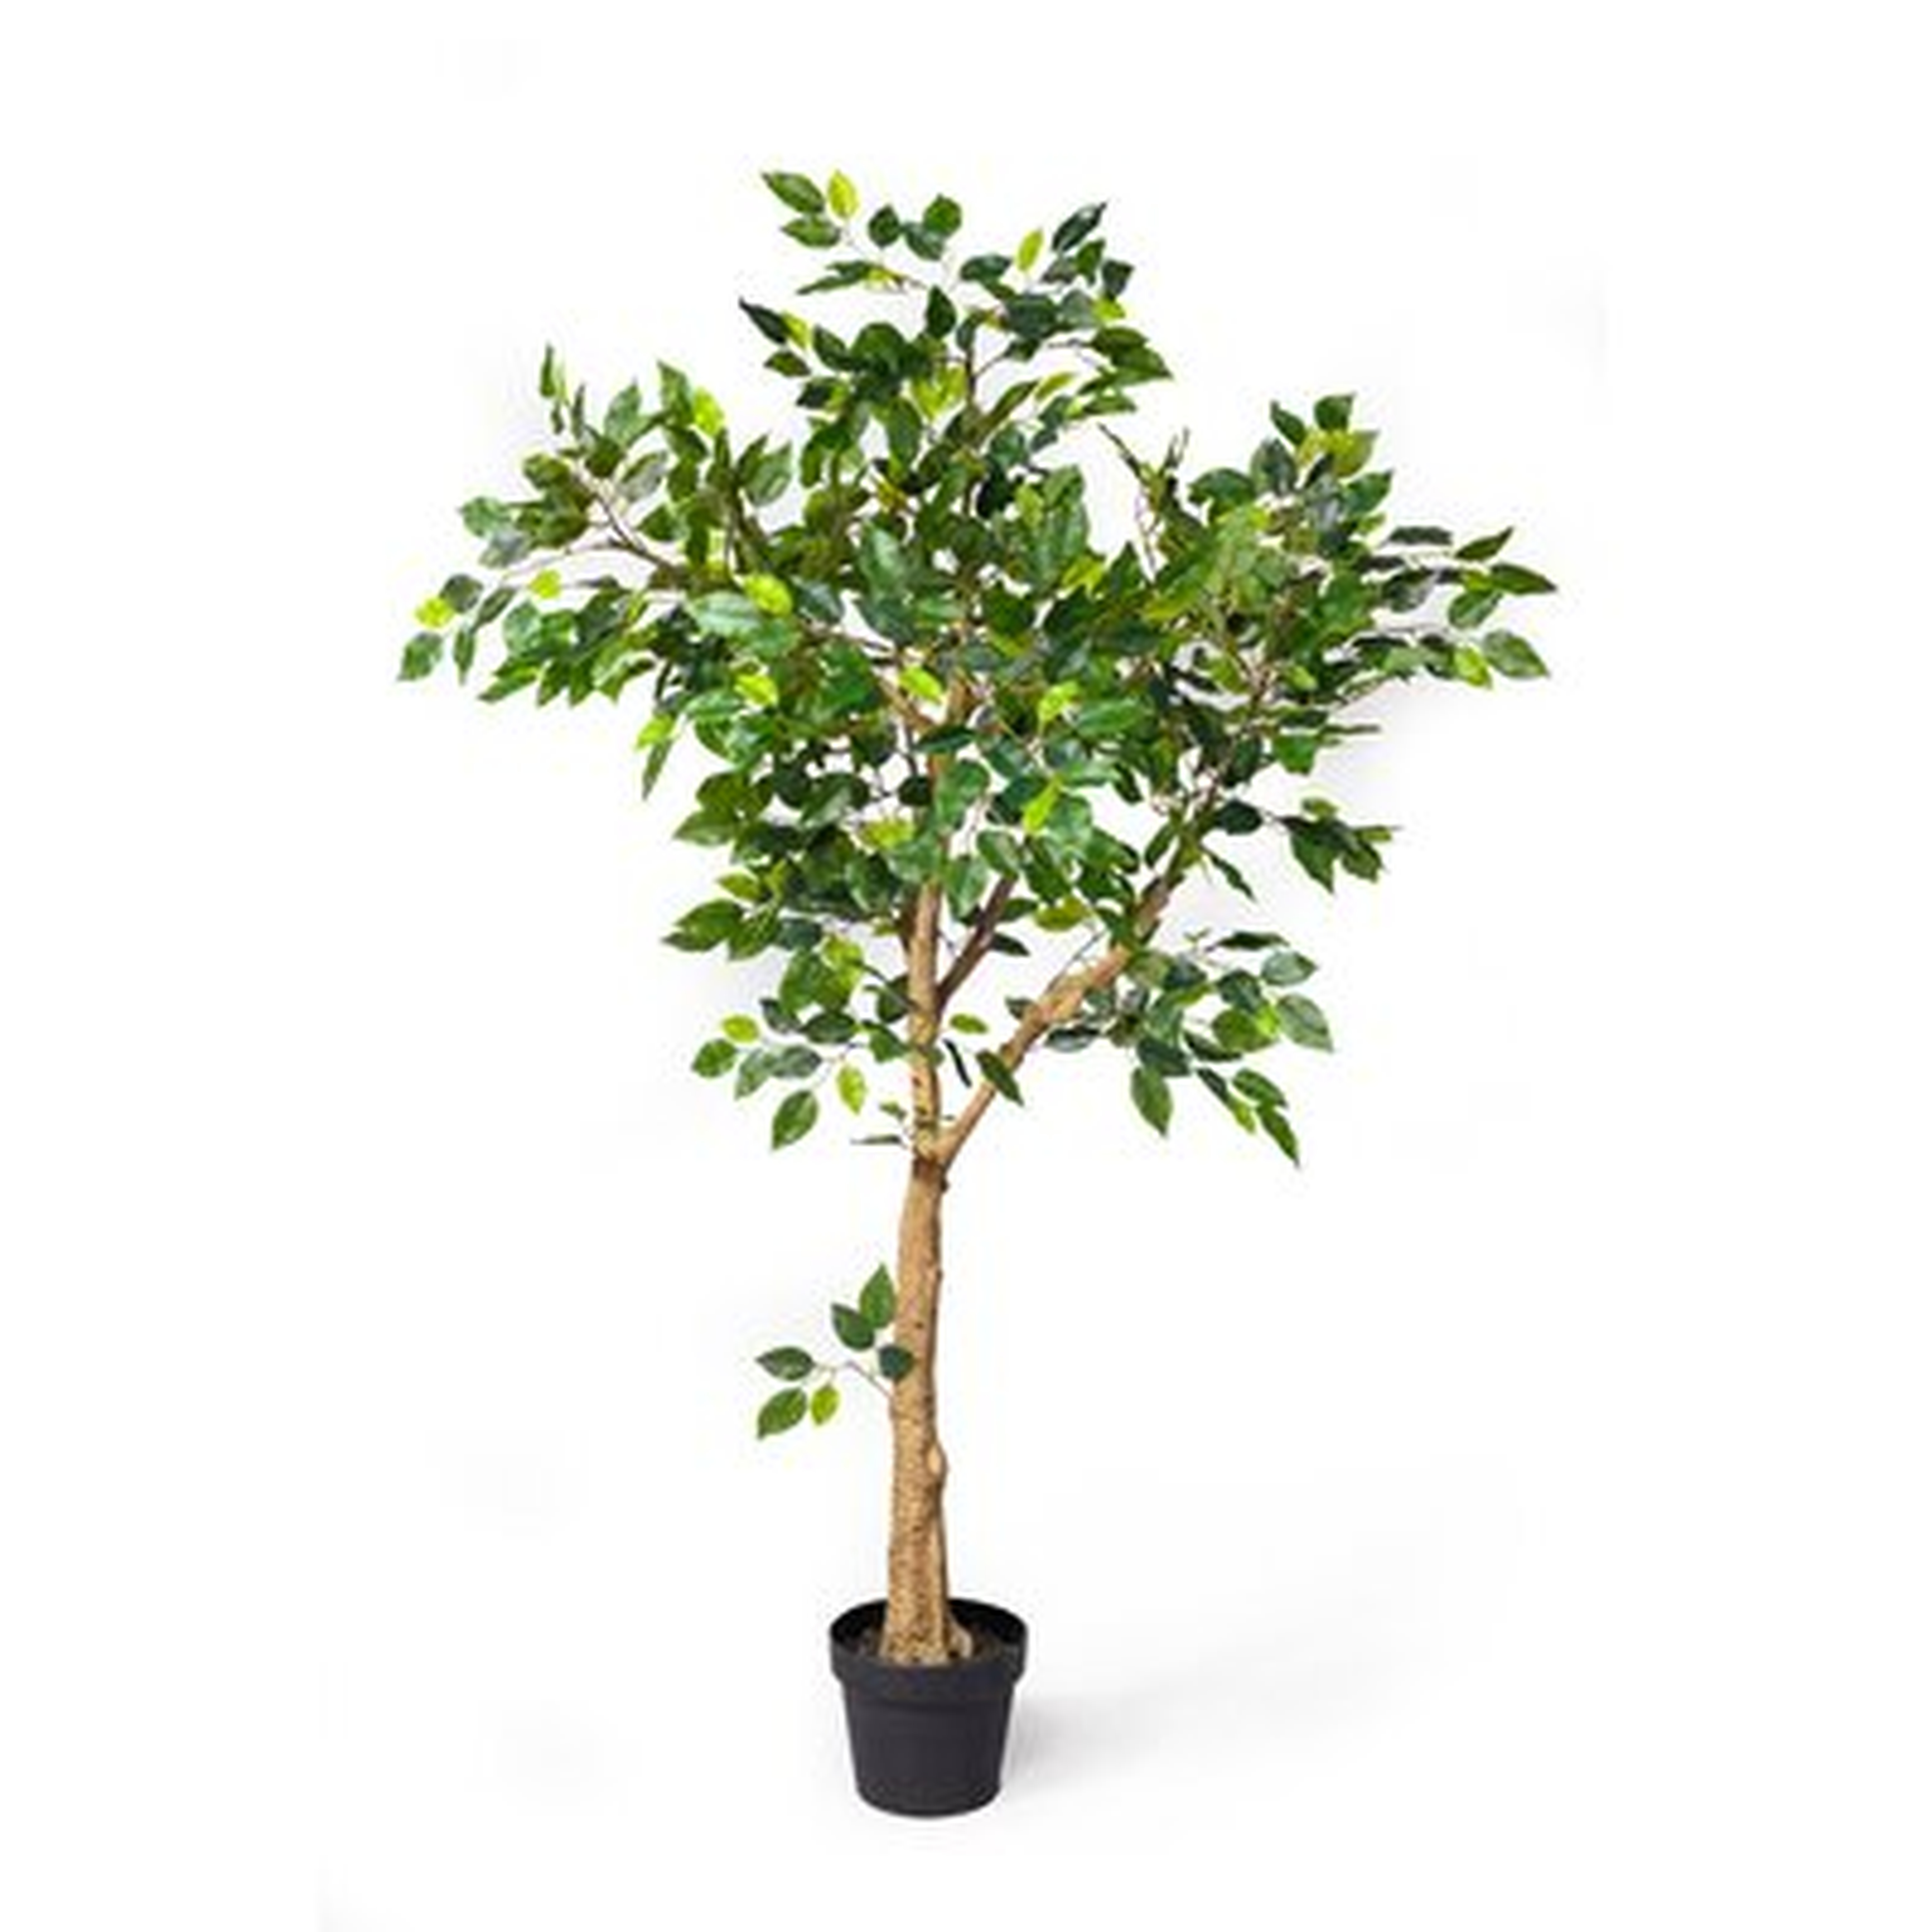 54" Artificial Ficus Tree in Pot - Wayfair